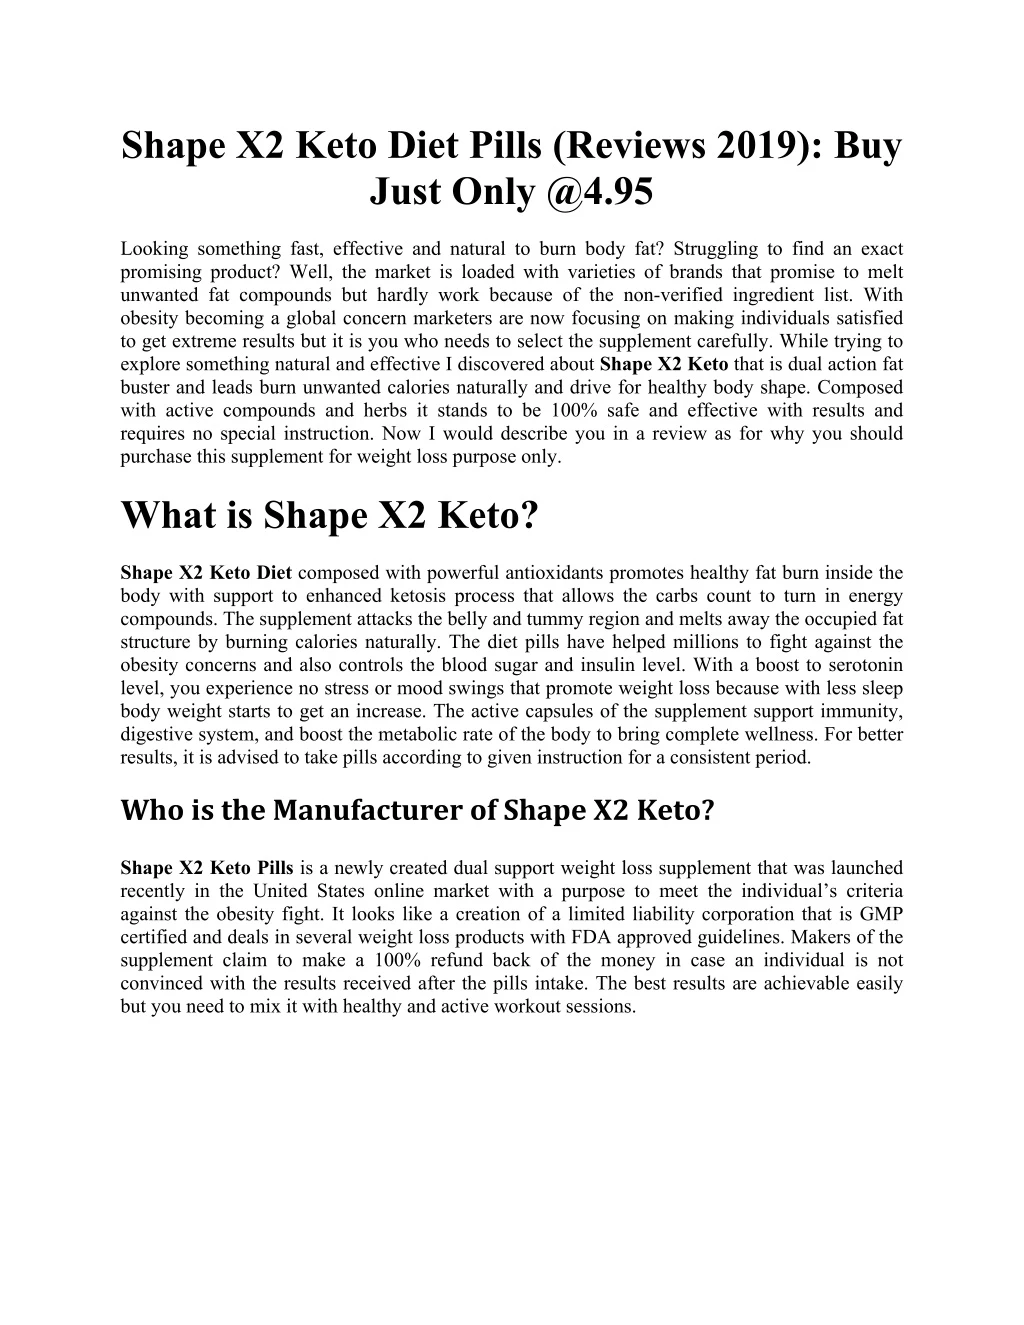 shape x2 keto diet pills reviews 2019 buy just n.